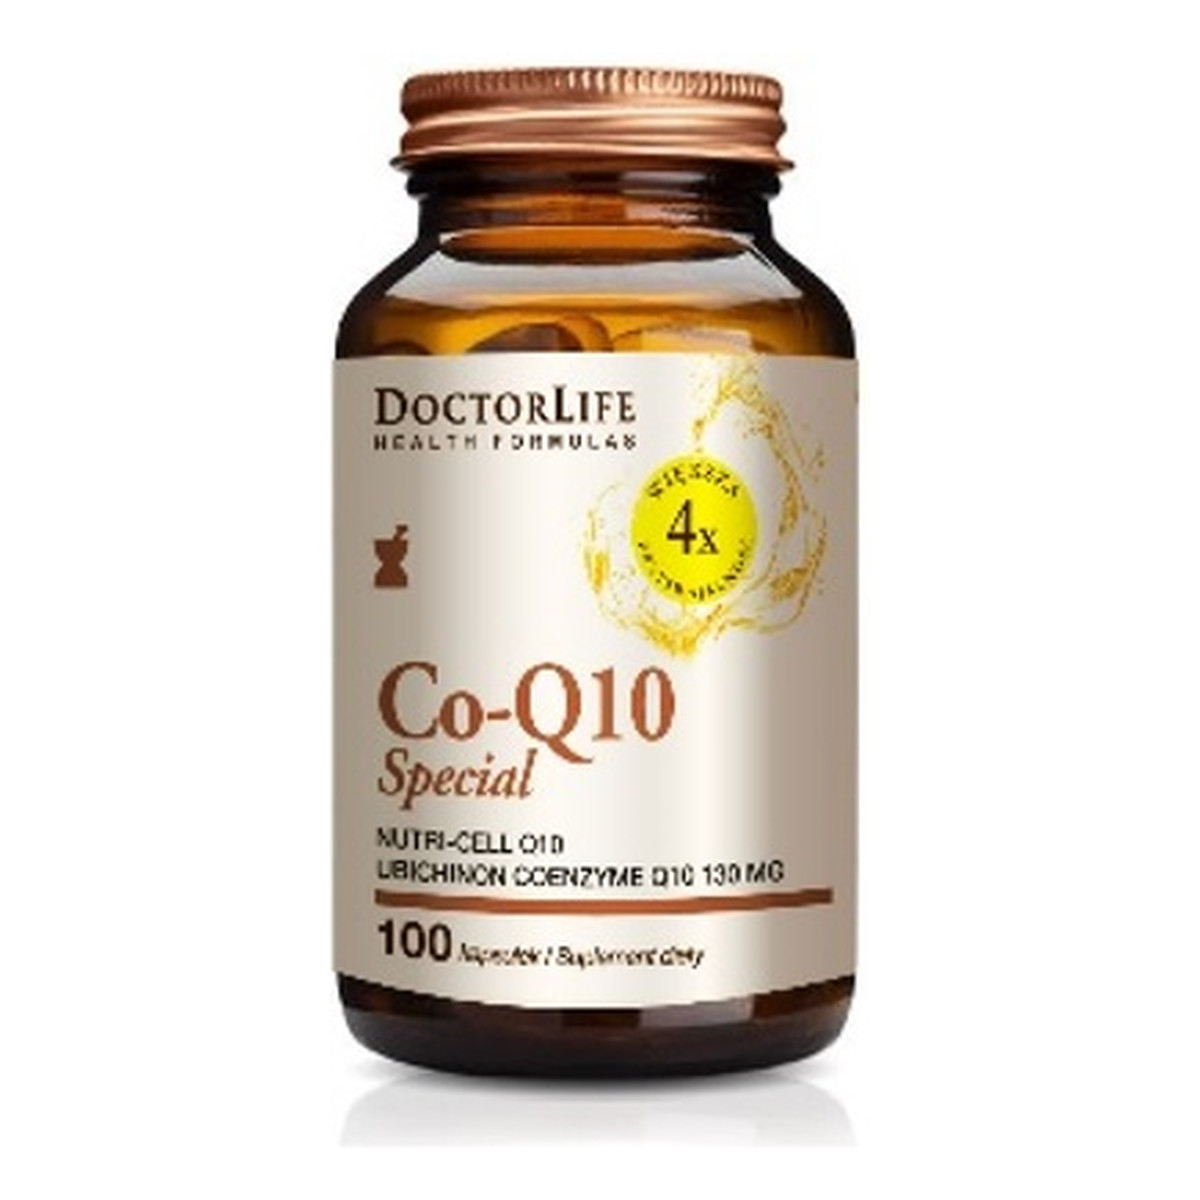 Doctor Life Co-q10 special koenzym q10 130mg w organicznym oleju kokosowym suplement diety 100 kapsułek